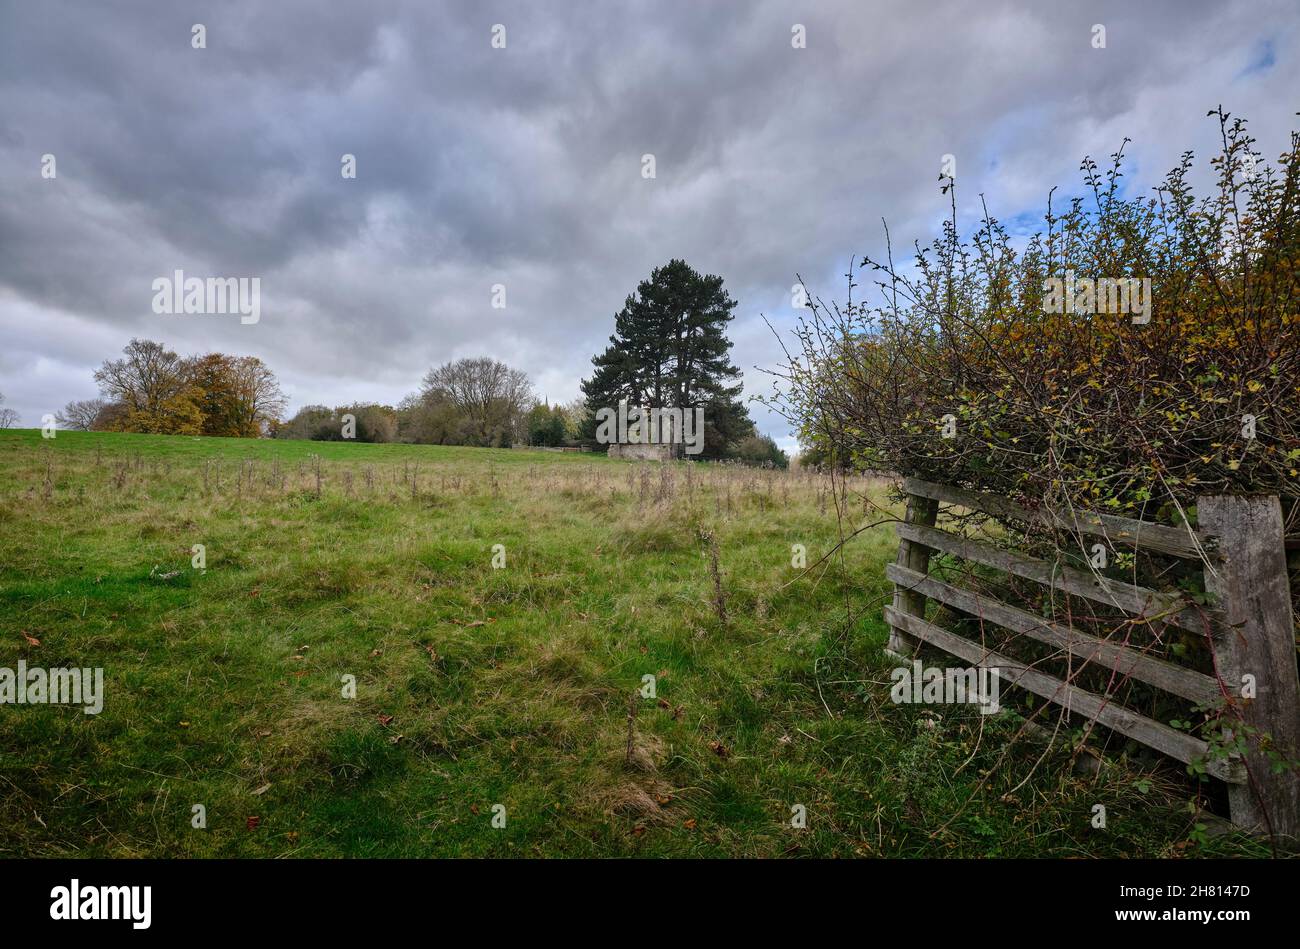 Bajo un cielo gris y pesado, una vieja valla de madera conduce a un campo que yace en barbecho y inactivo a mediados de noviembre Foto de stock